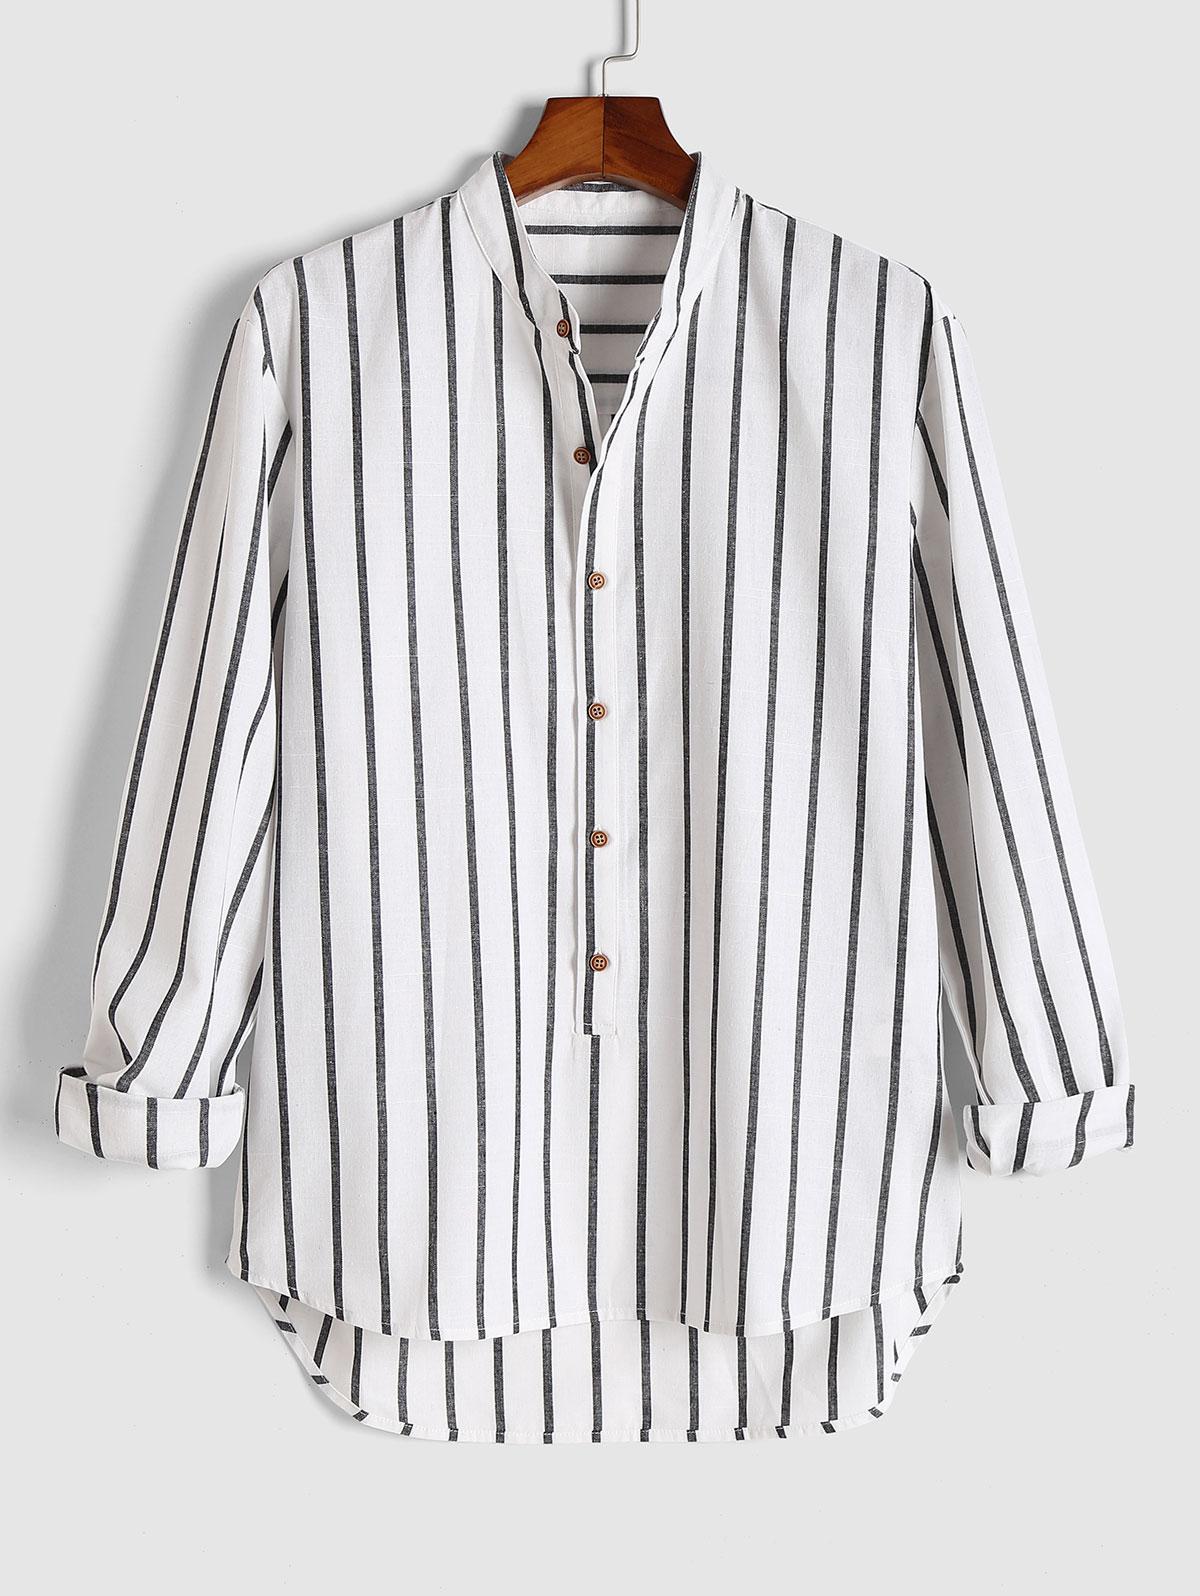 ZAFUL Men's Vertical Stripe Pattern High Low Shirt 3xl White